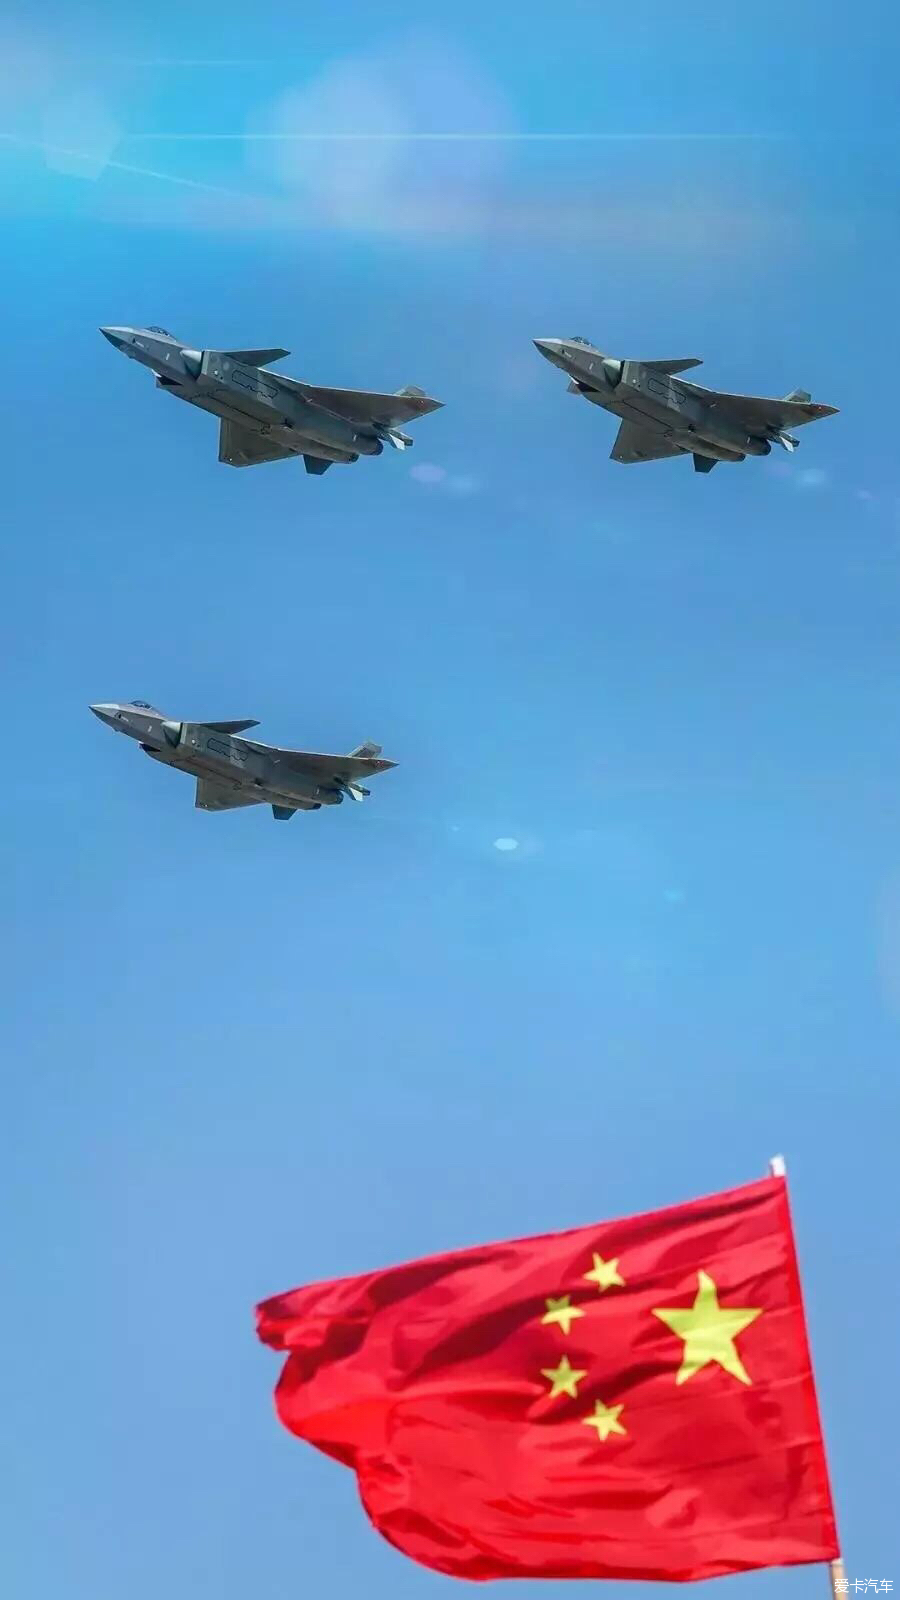 今天是11月11日,是空军建军节,祝人民空军生快!